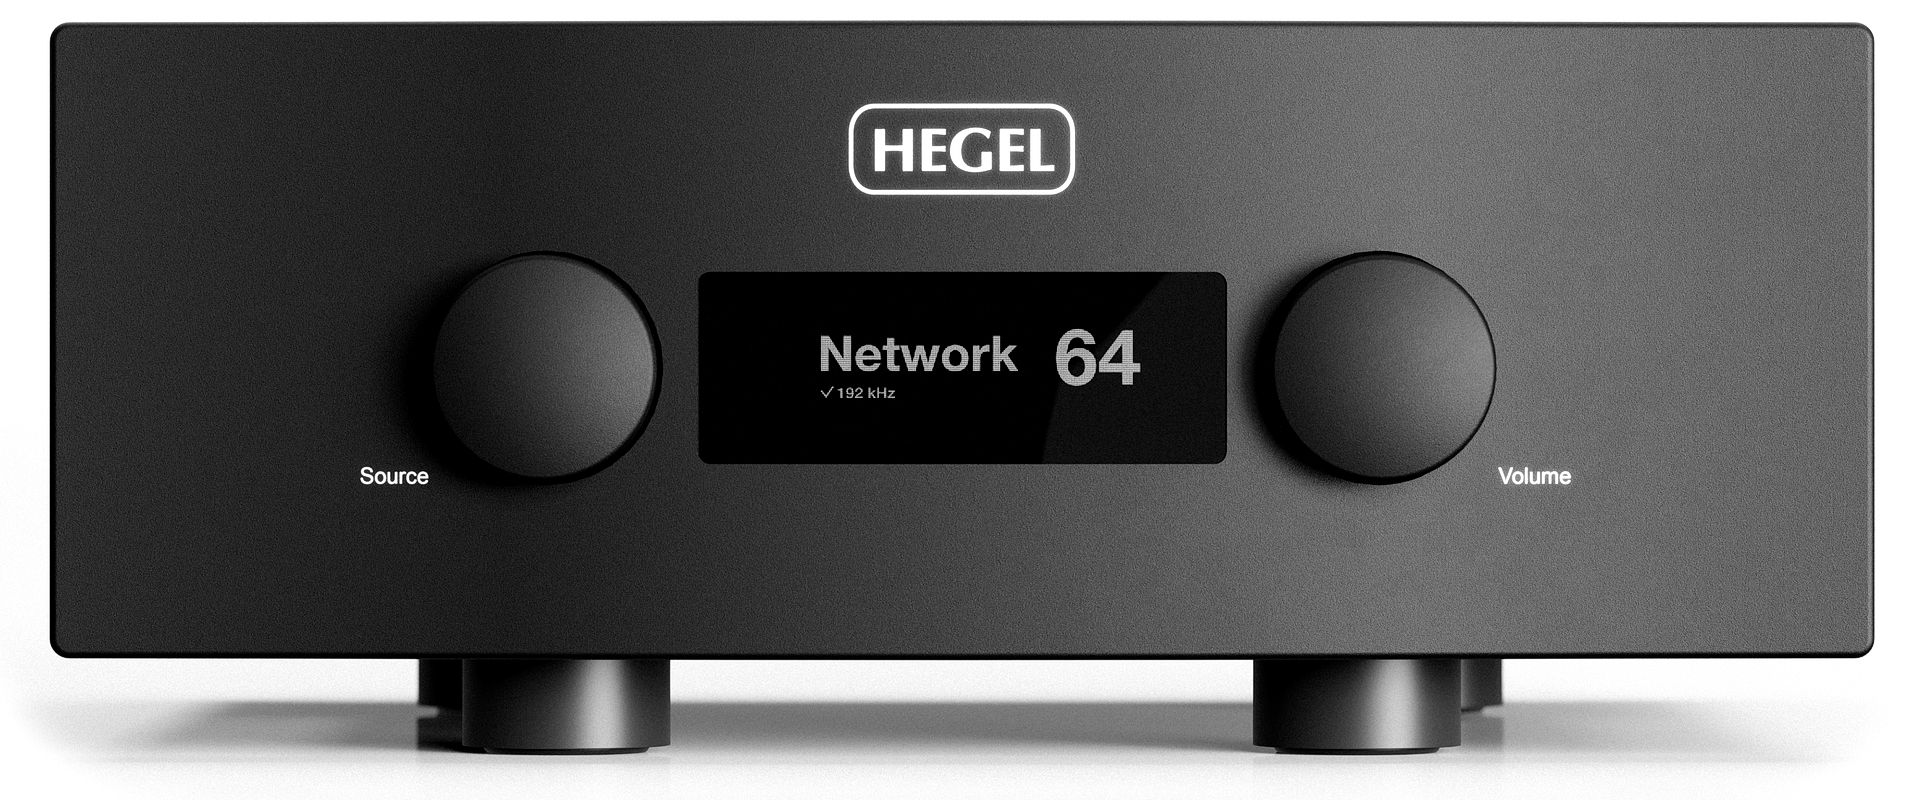 Флагманским интегральным усилителем Hegel стала модель H600